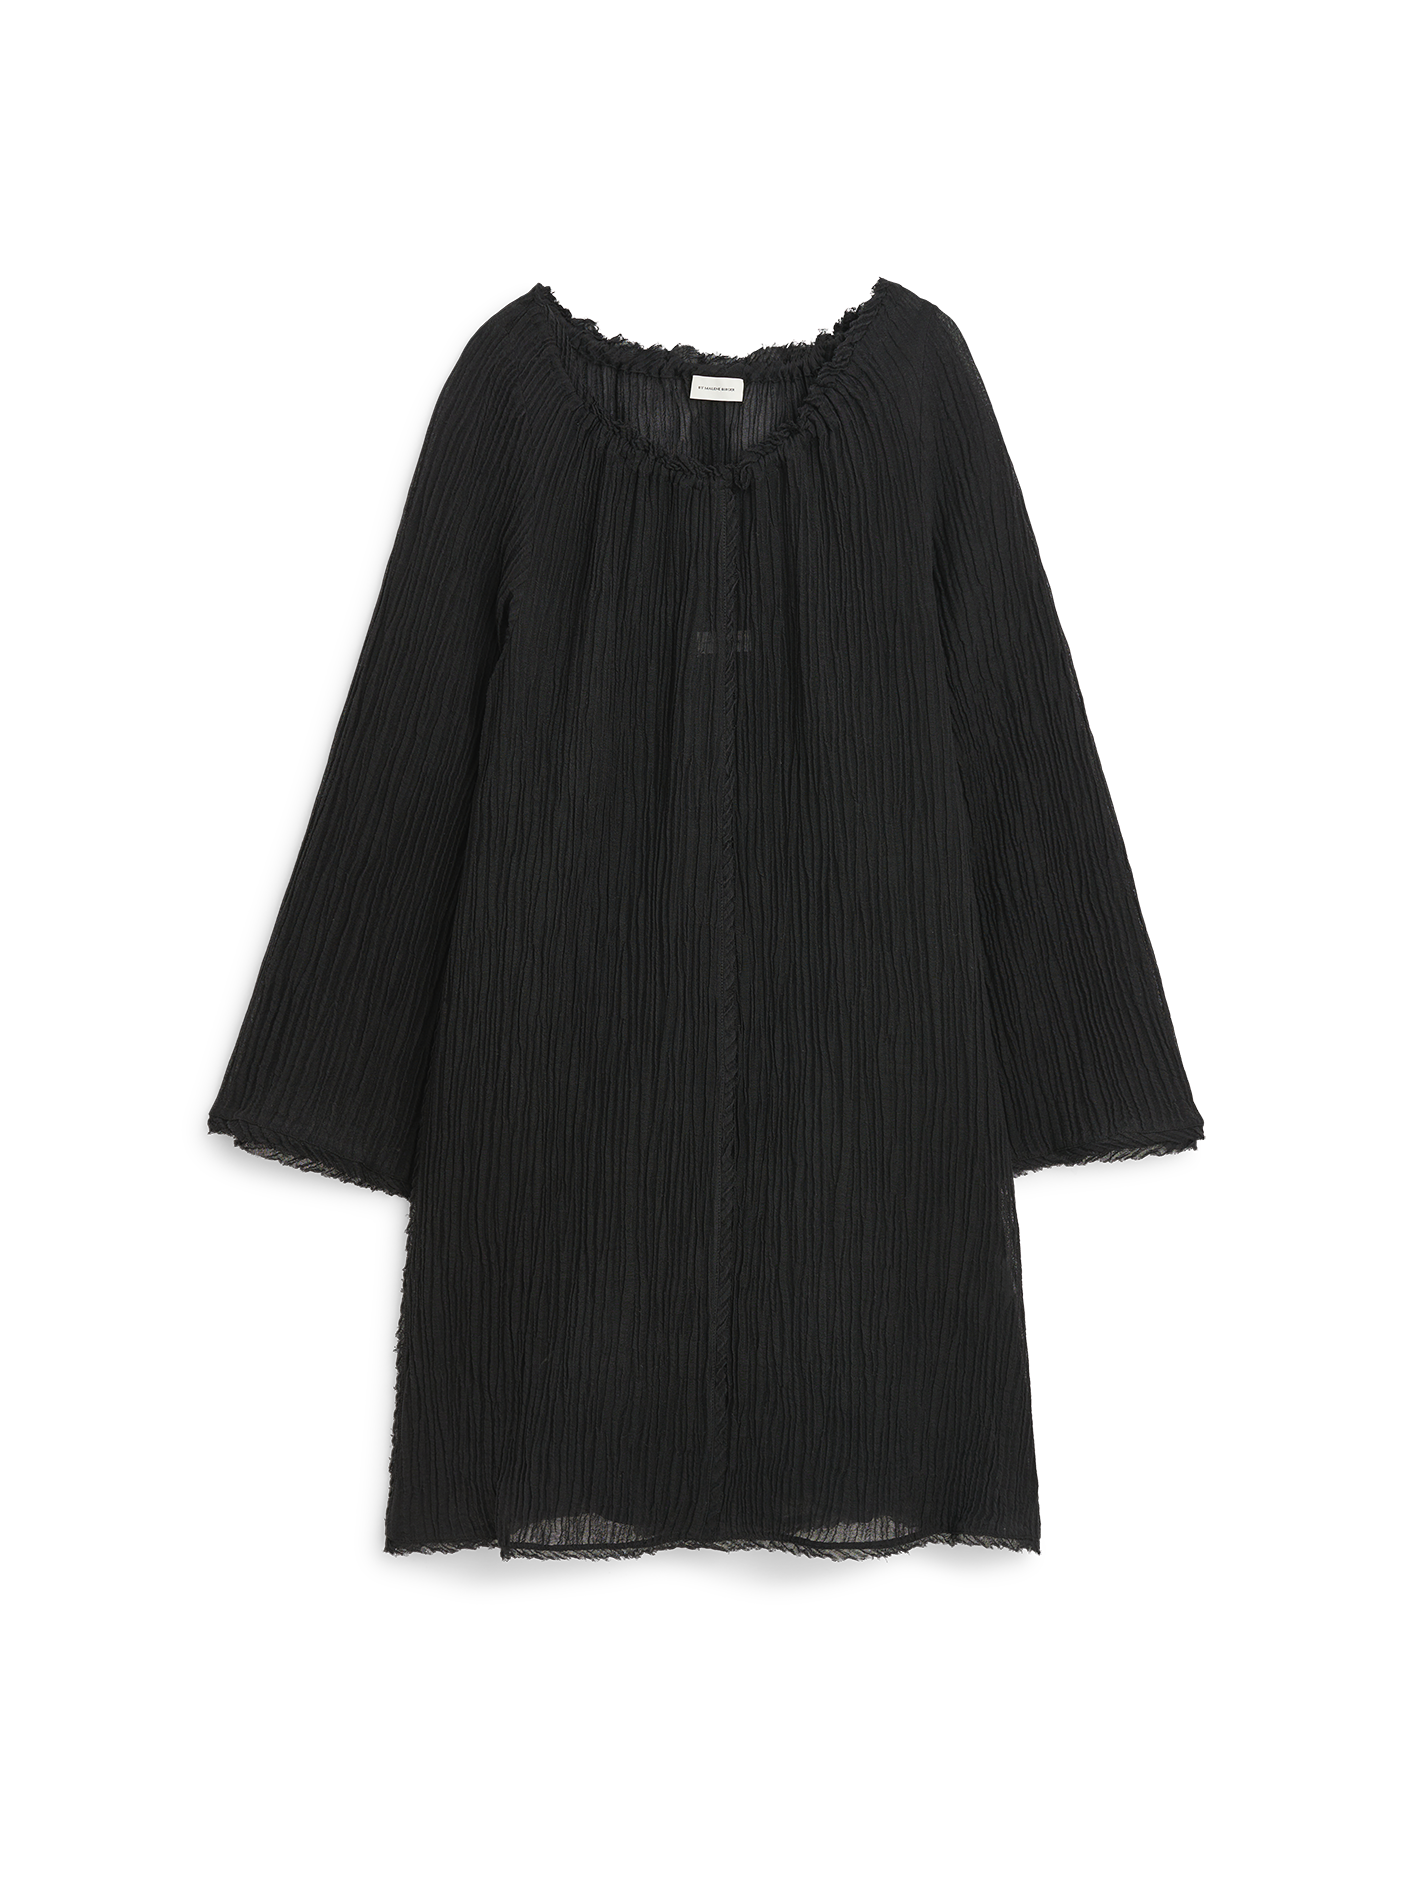 EMORAS summer weave dress, black